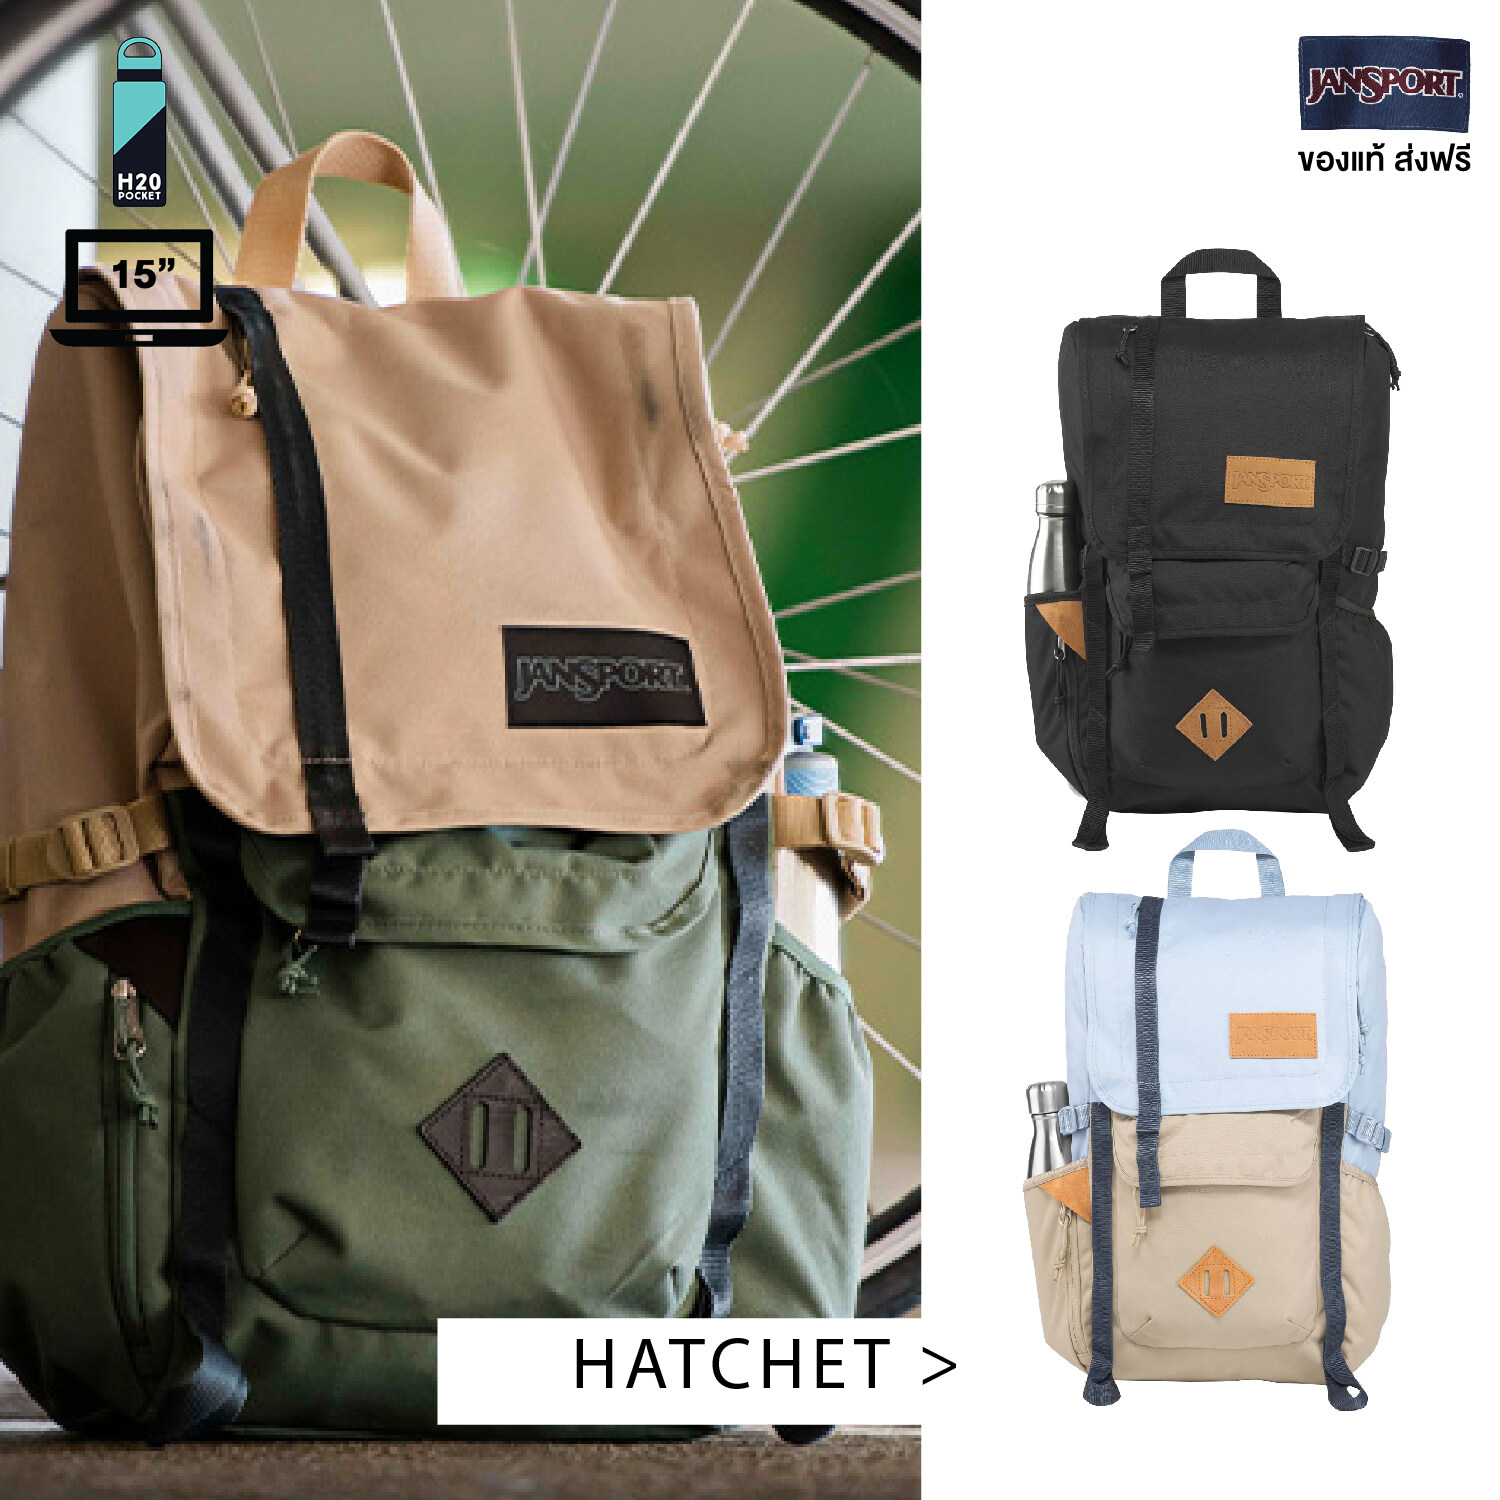 JanSport รุ่น HATCHET - มี 4 สีให้เลือก Laptop 15 นิ้ว กระเป๋า เป้ สะพาย JanSport Backpack กระเป๋าJansport กระเป๋า กระเป๋าเป้ กระเป๋าแฟชั่น